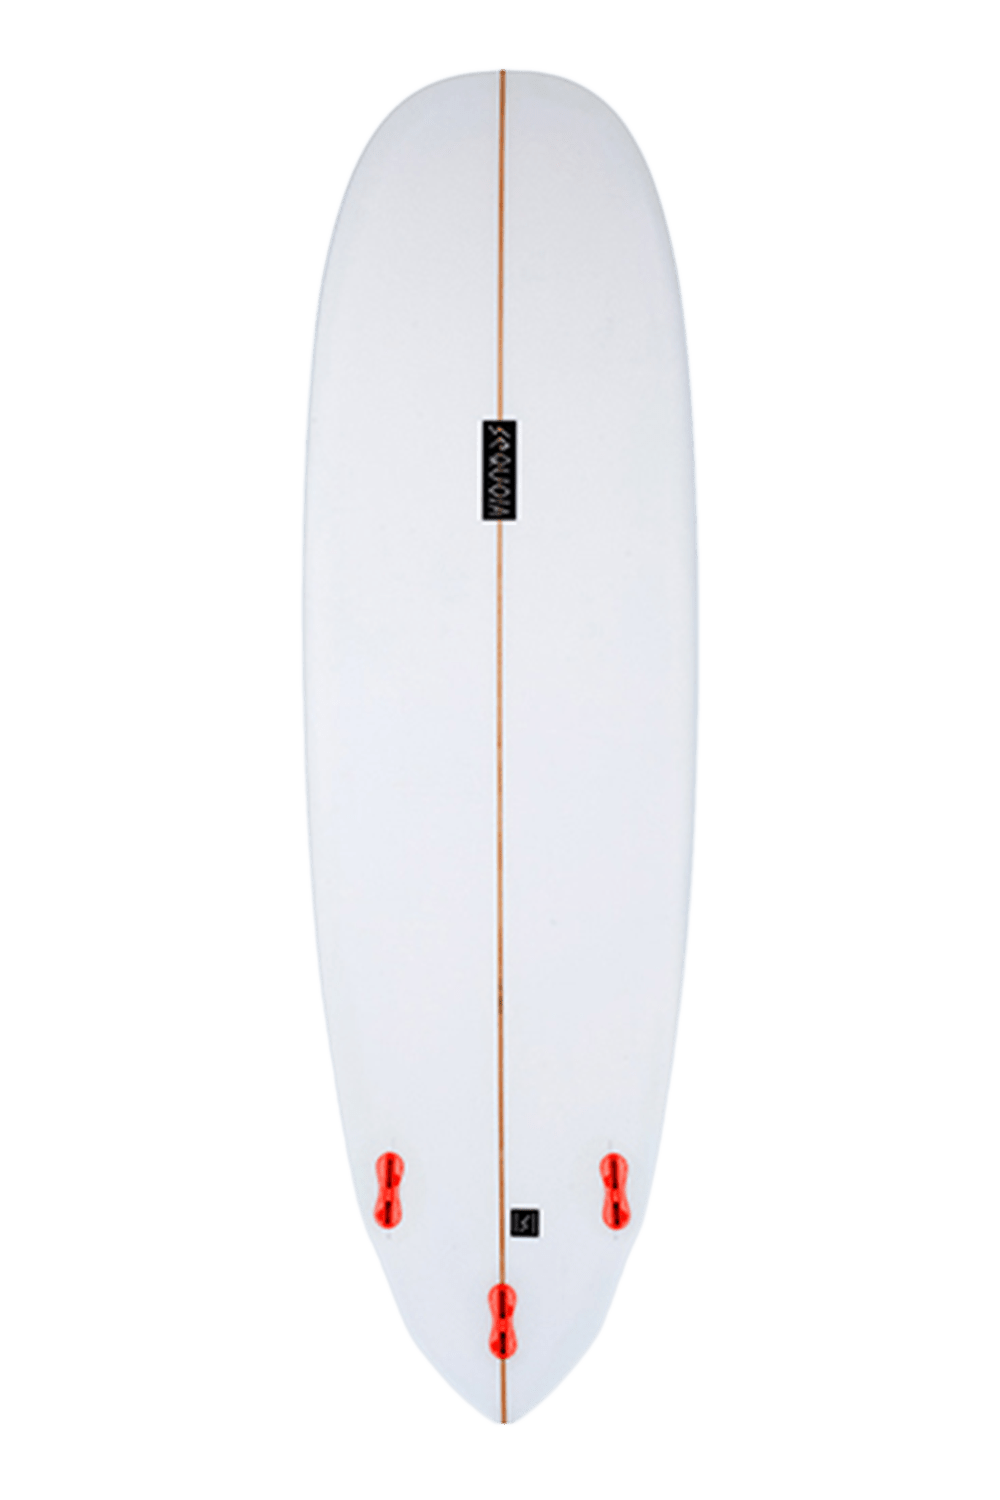 SJ beginner surfboard bottom